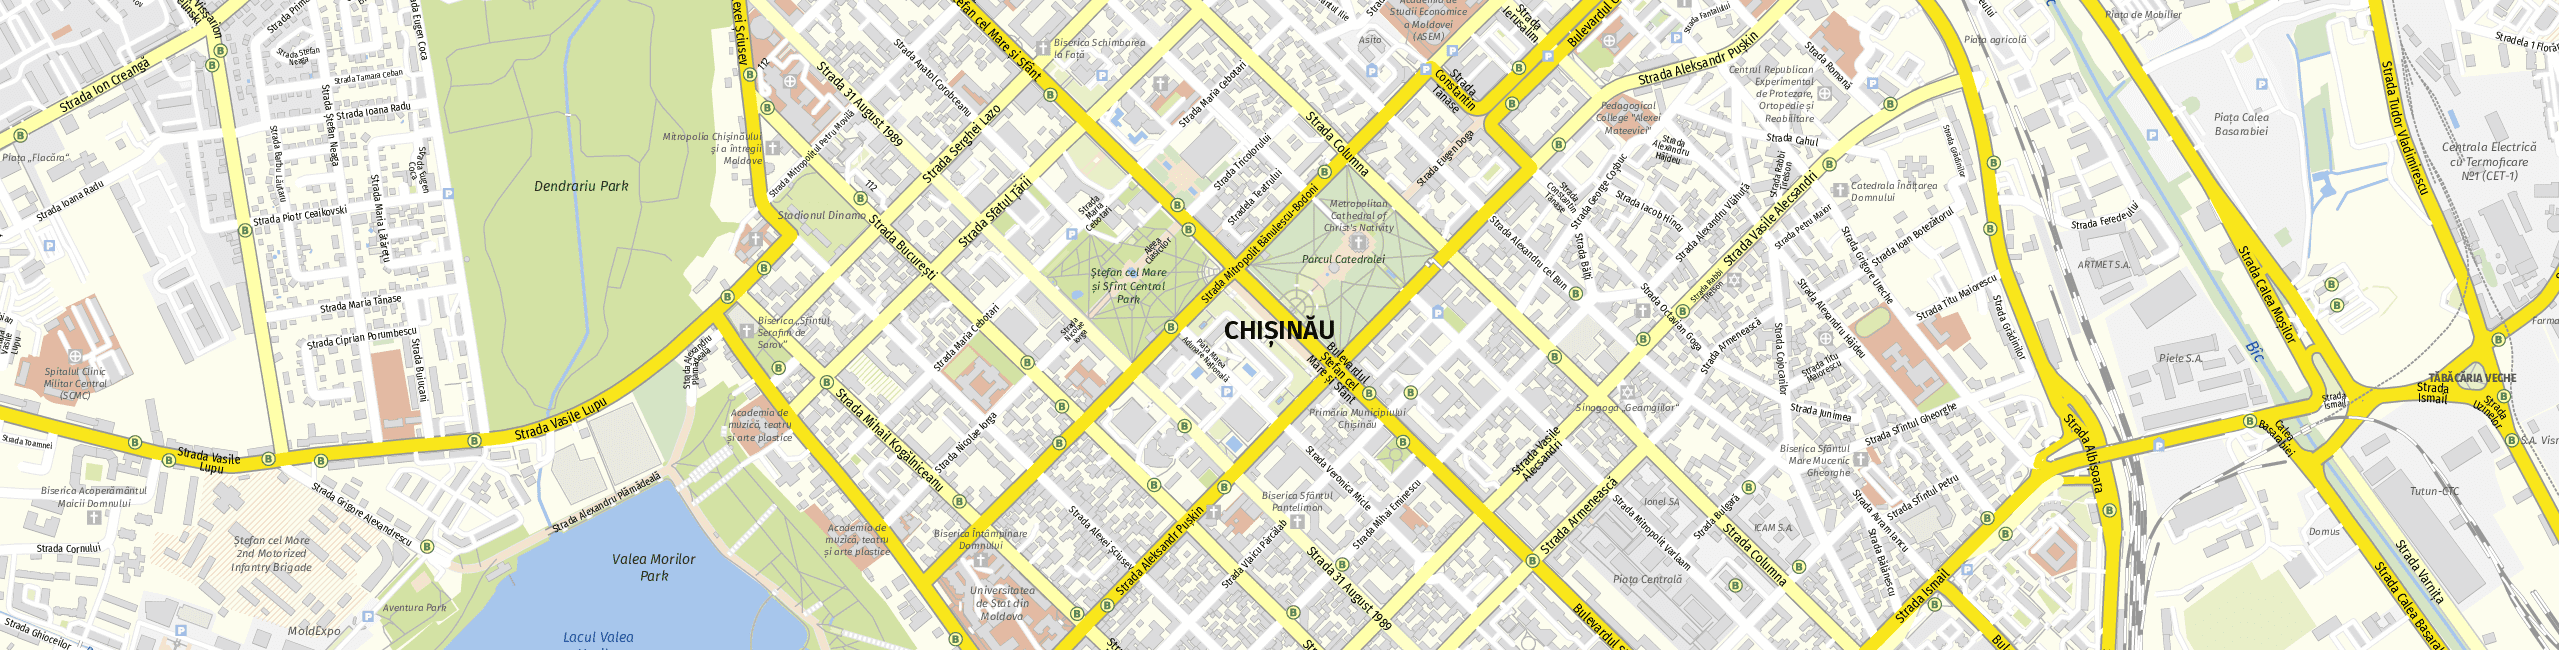 Stadtplan Kischinau zum Downloaden.